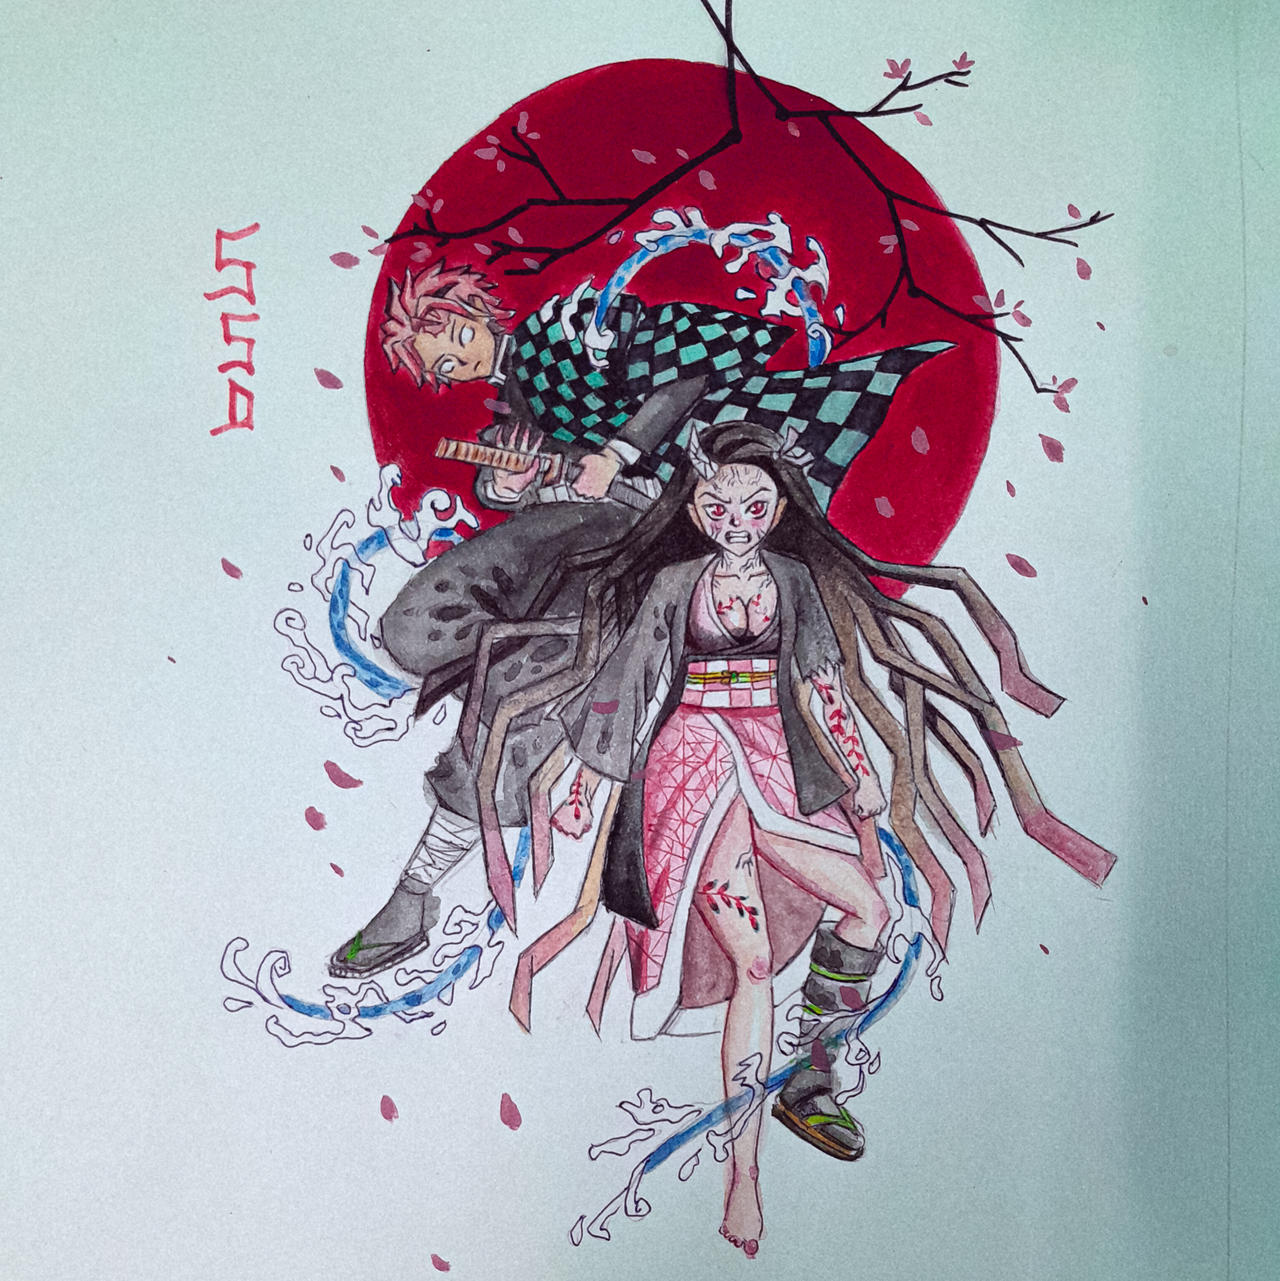 Tanjiro fan art by YasinBaig on DeviantArt